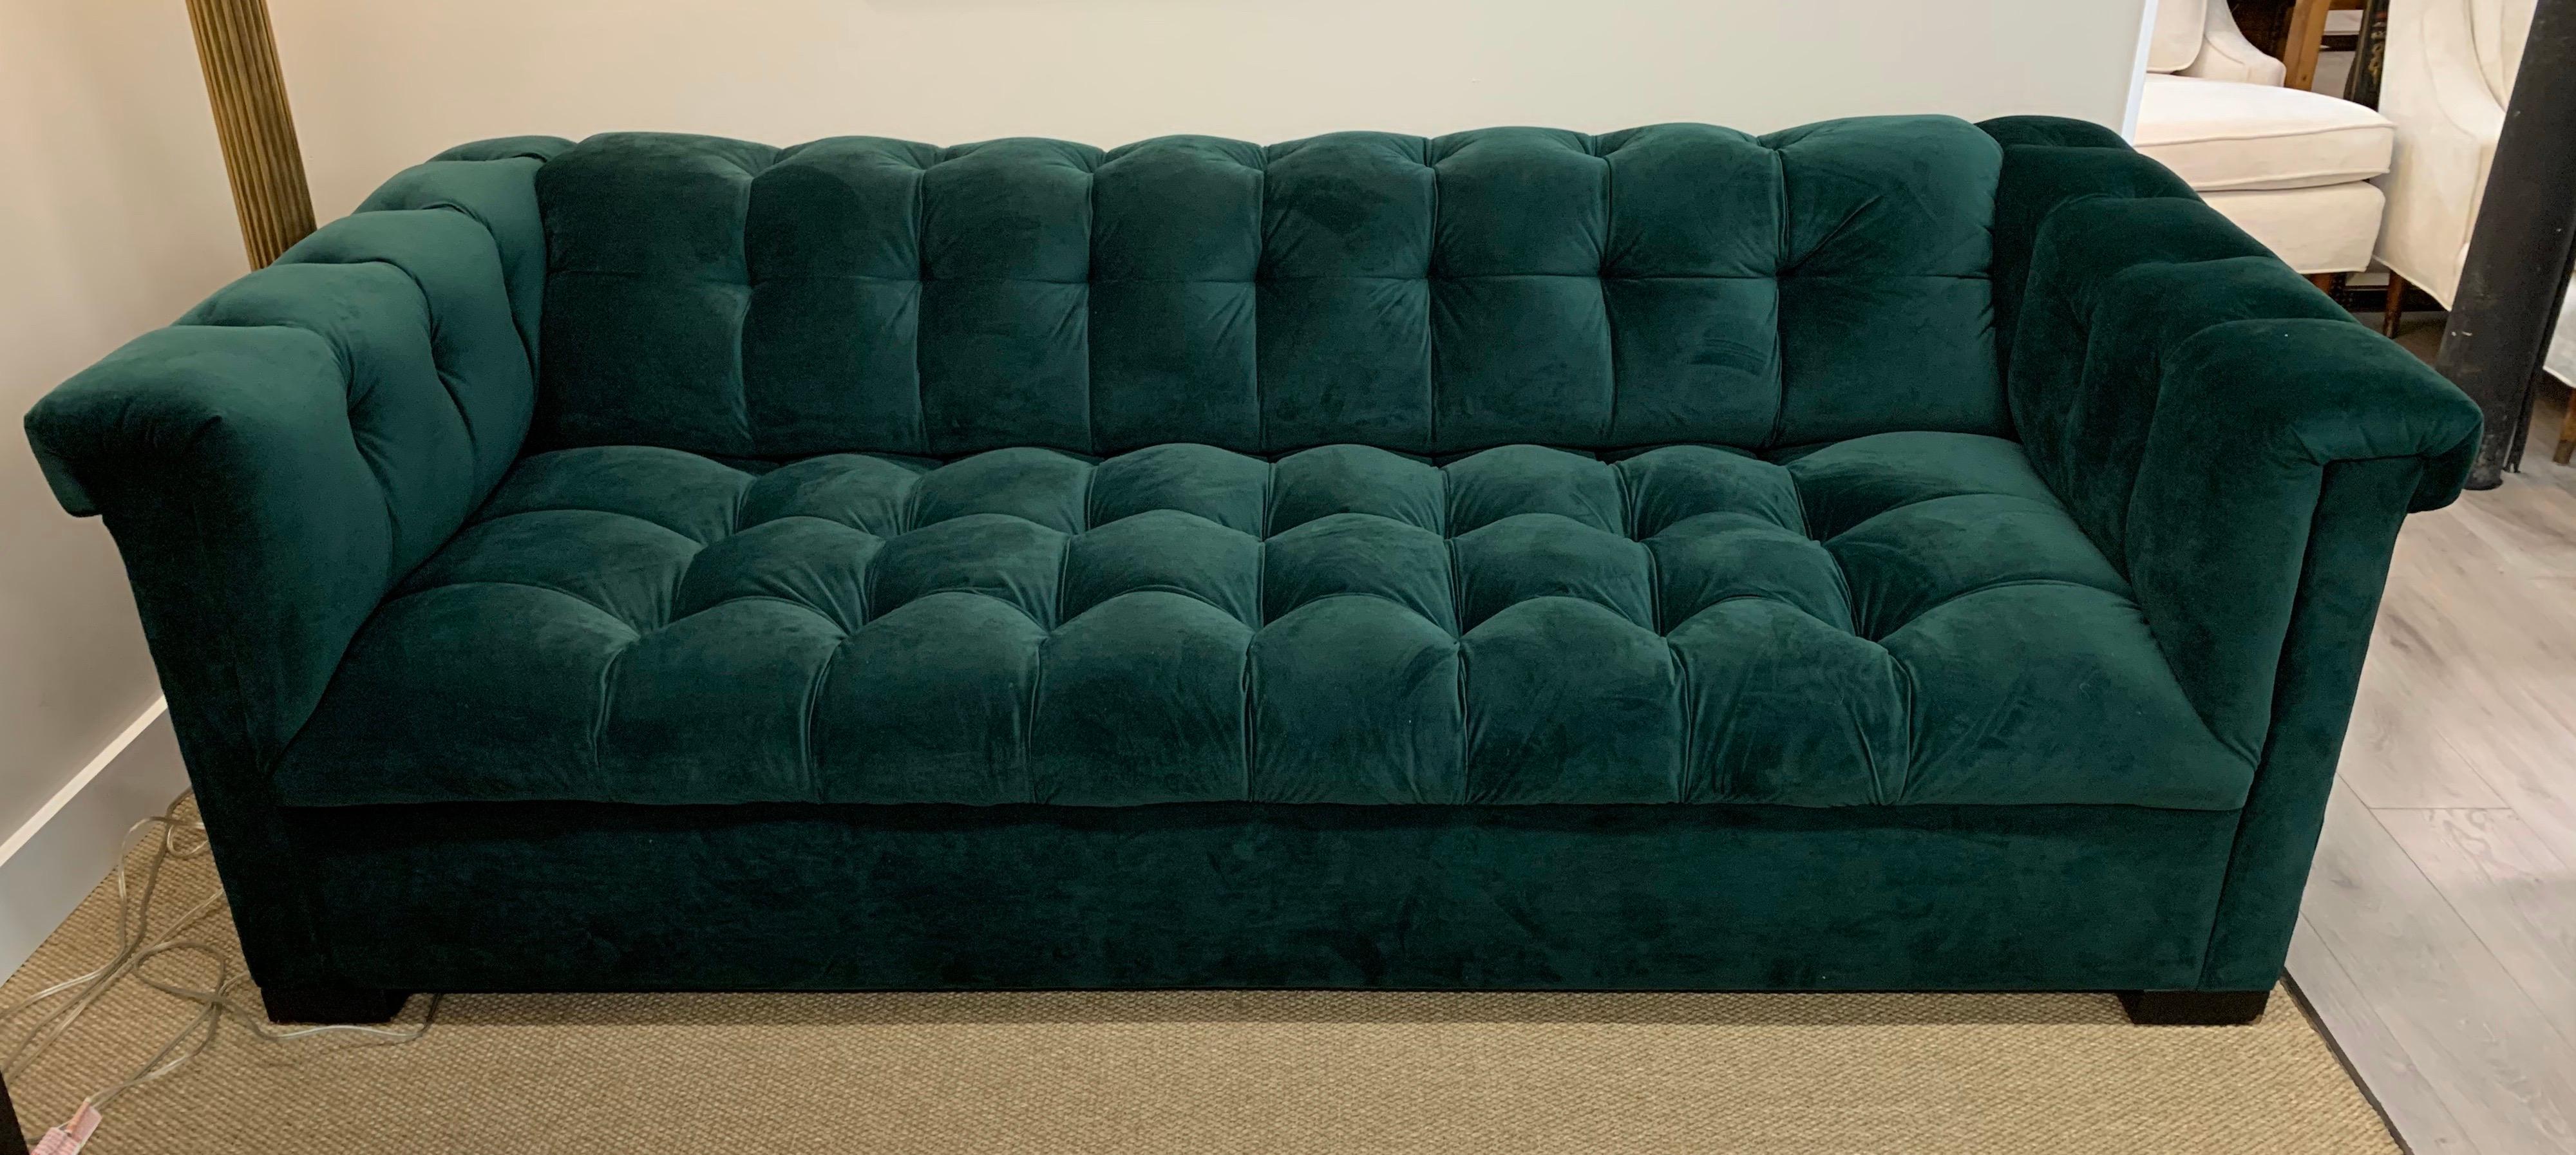 green velvet chesterfield chair